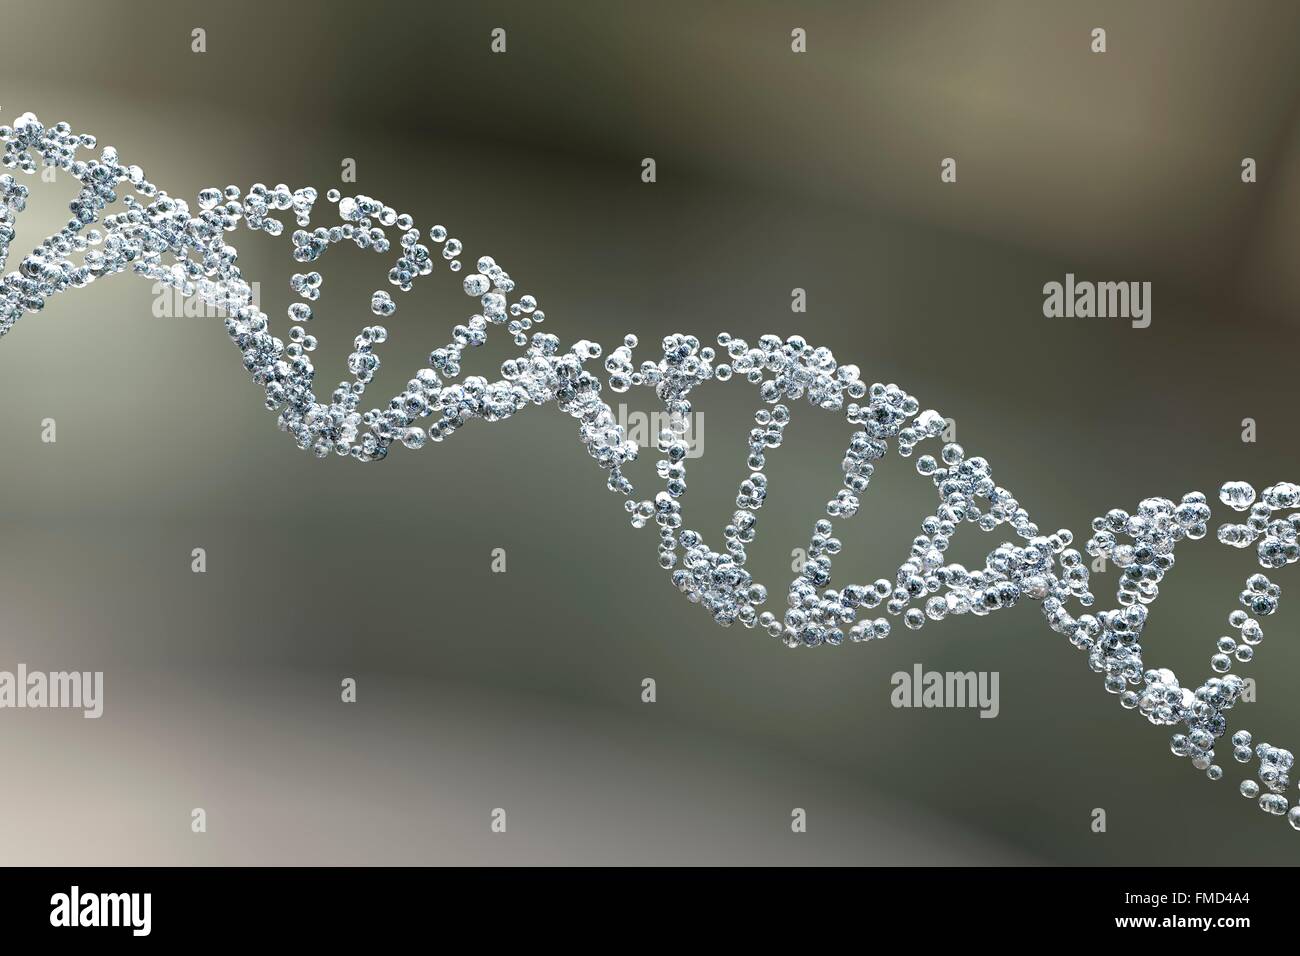 DNA-Molekül. Computer Bild einer doppelten gestrandet Molekül der DNA (Desoxyribonukleinsäure). DNA besteht aus zwei Strängen, die in einer Doppelhelix verdreht. Jeder Strang besteht aus einer Zucker-Phosphat-Rückgrat Nukleotidbasen befestigt. Es gibt vier Basen: Adenin, Cytosin, Guanin und Thymin, die durch Wasserstoffbrücken miteinander verbunden sind. DNA enthält Abschnitte, die Gene, die kodieren Erbinformation des Körpers genannt. Stockfoto